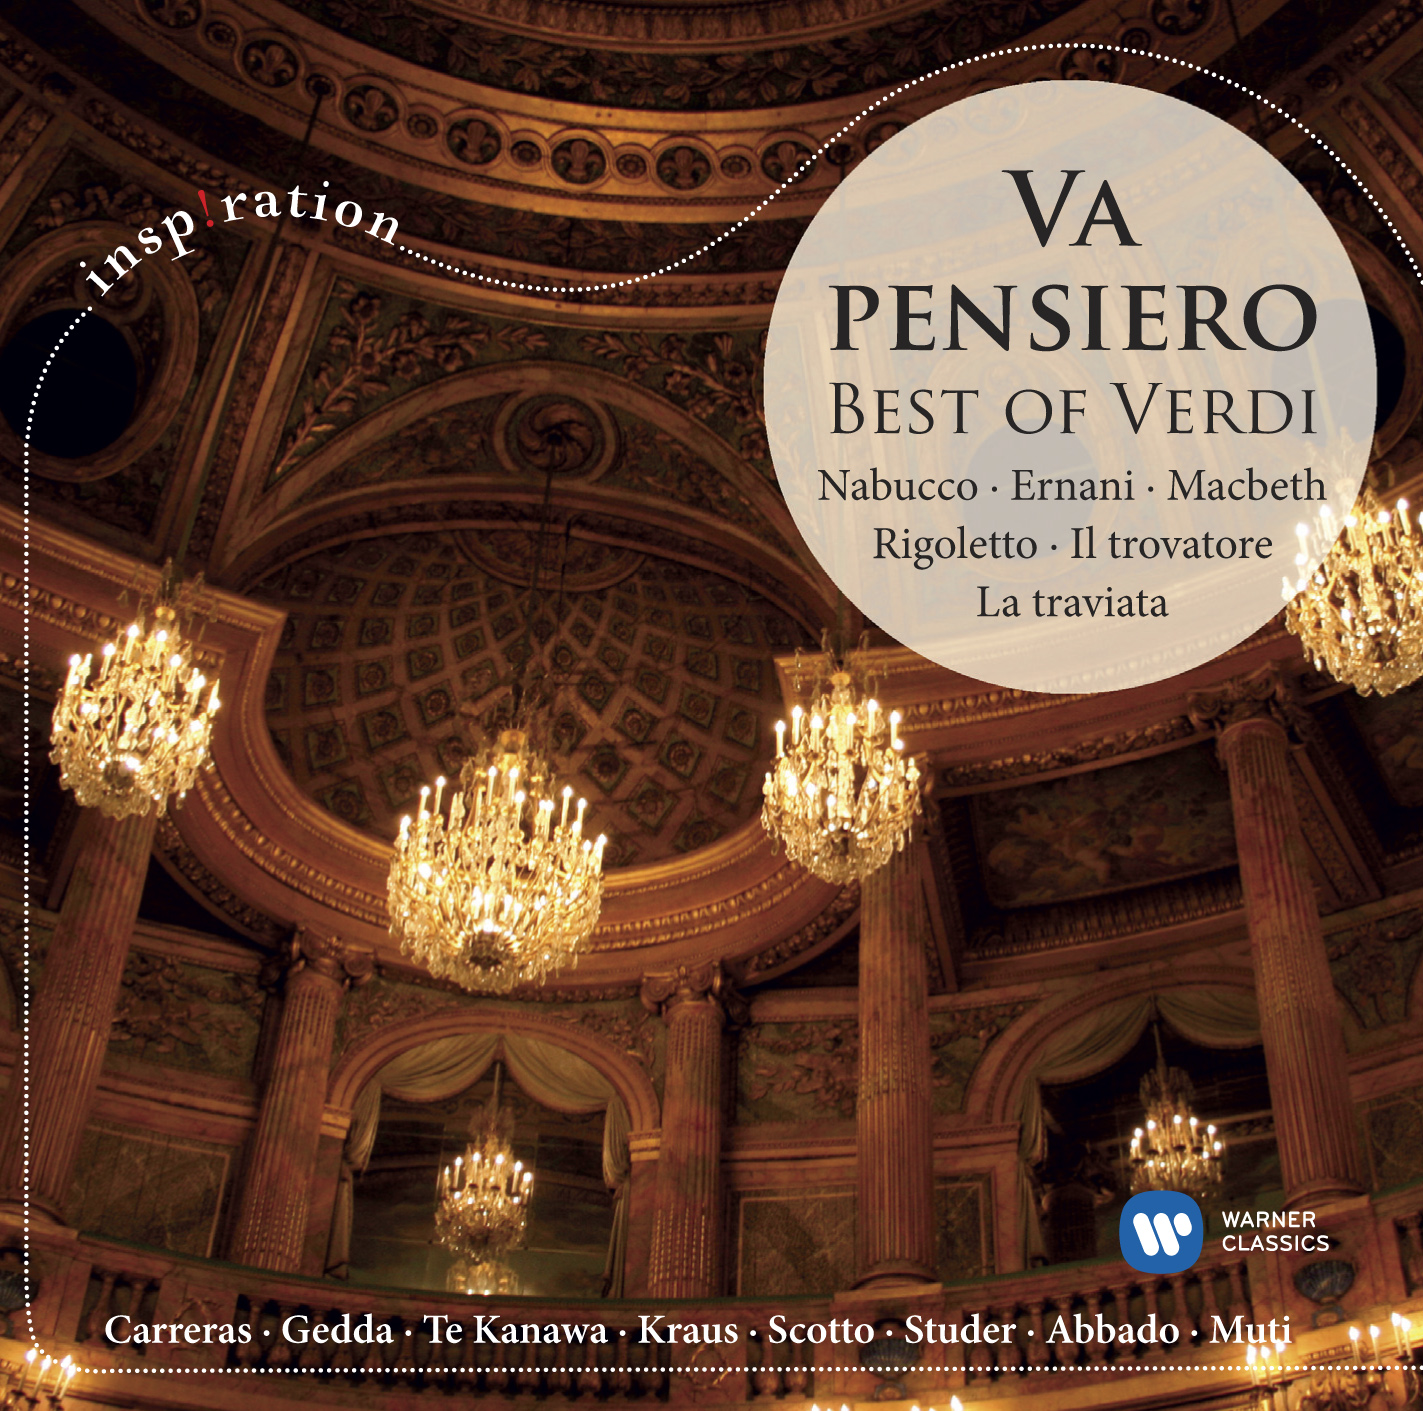 Va pensiero: Best of Verdi | Warner Classics